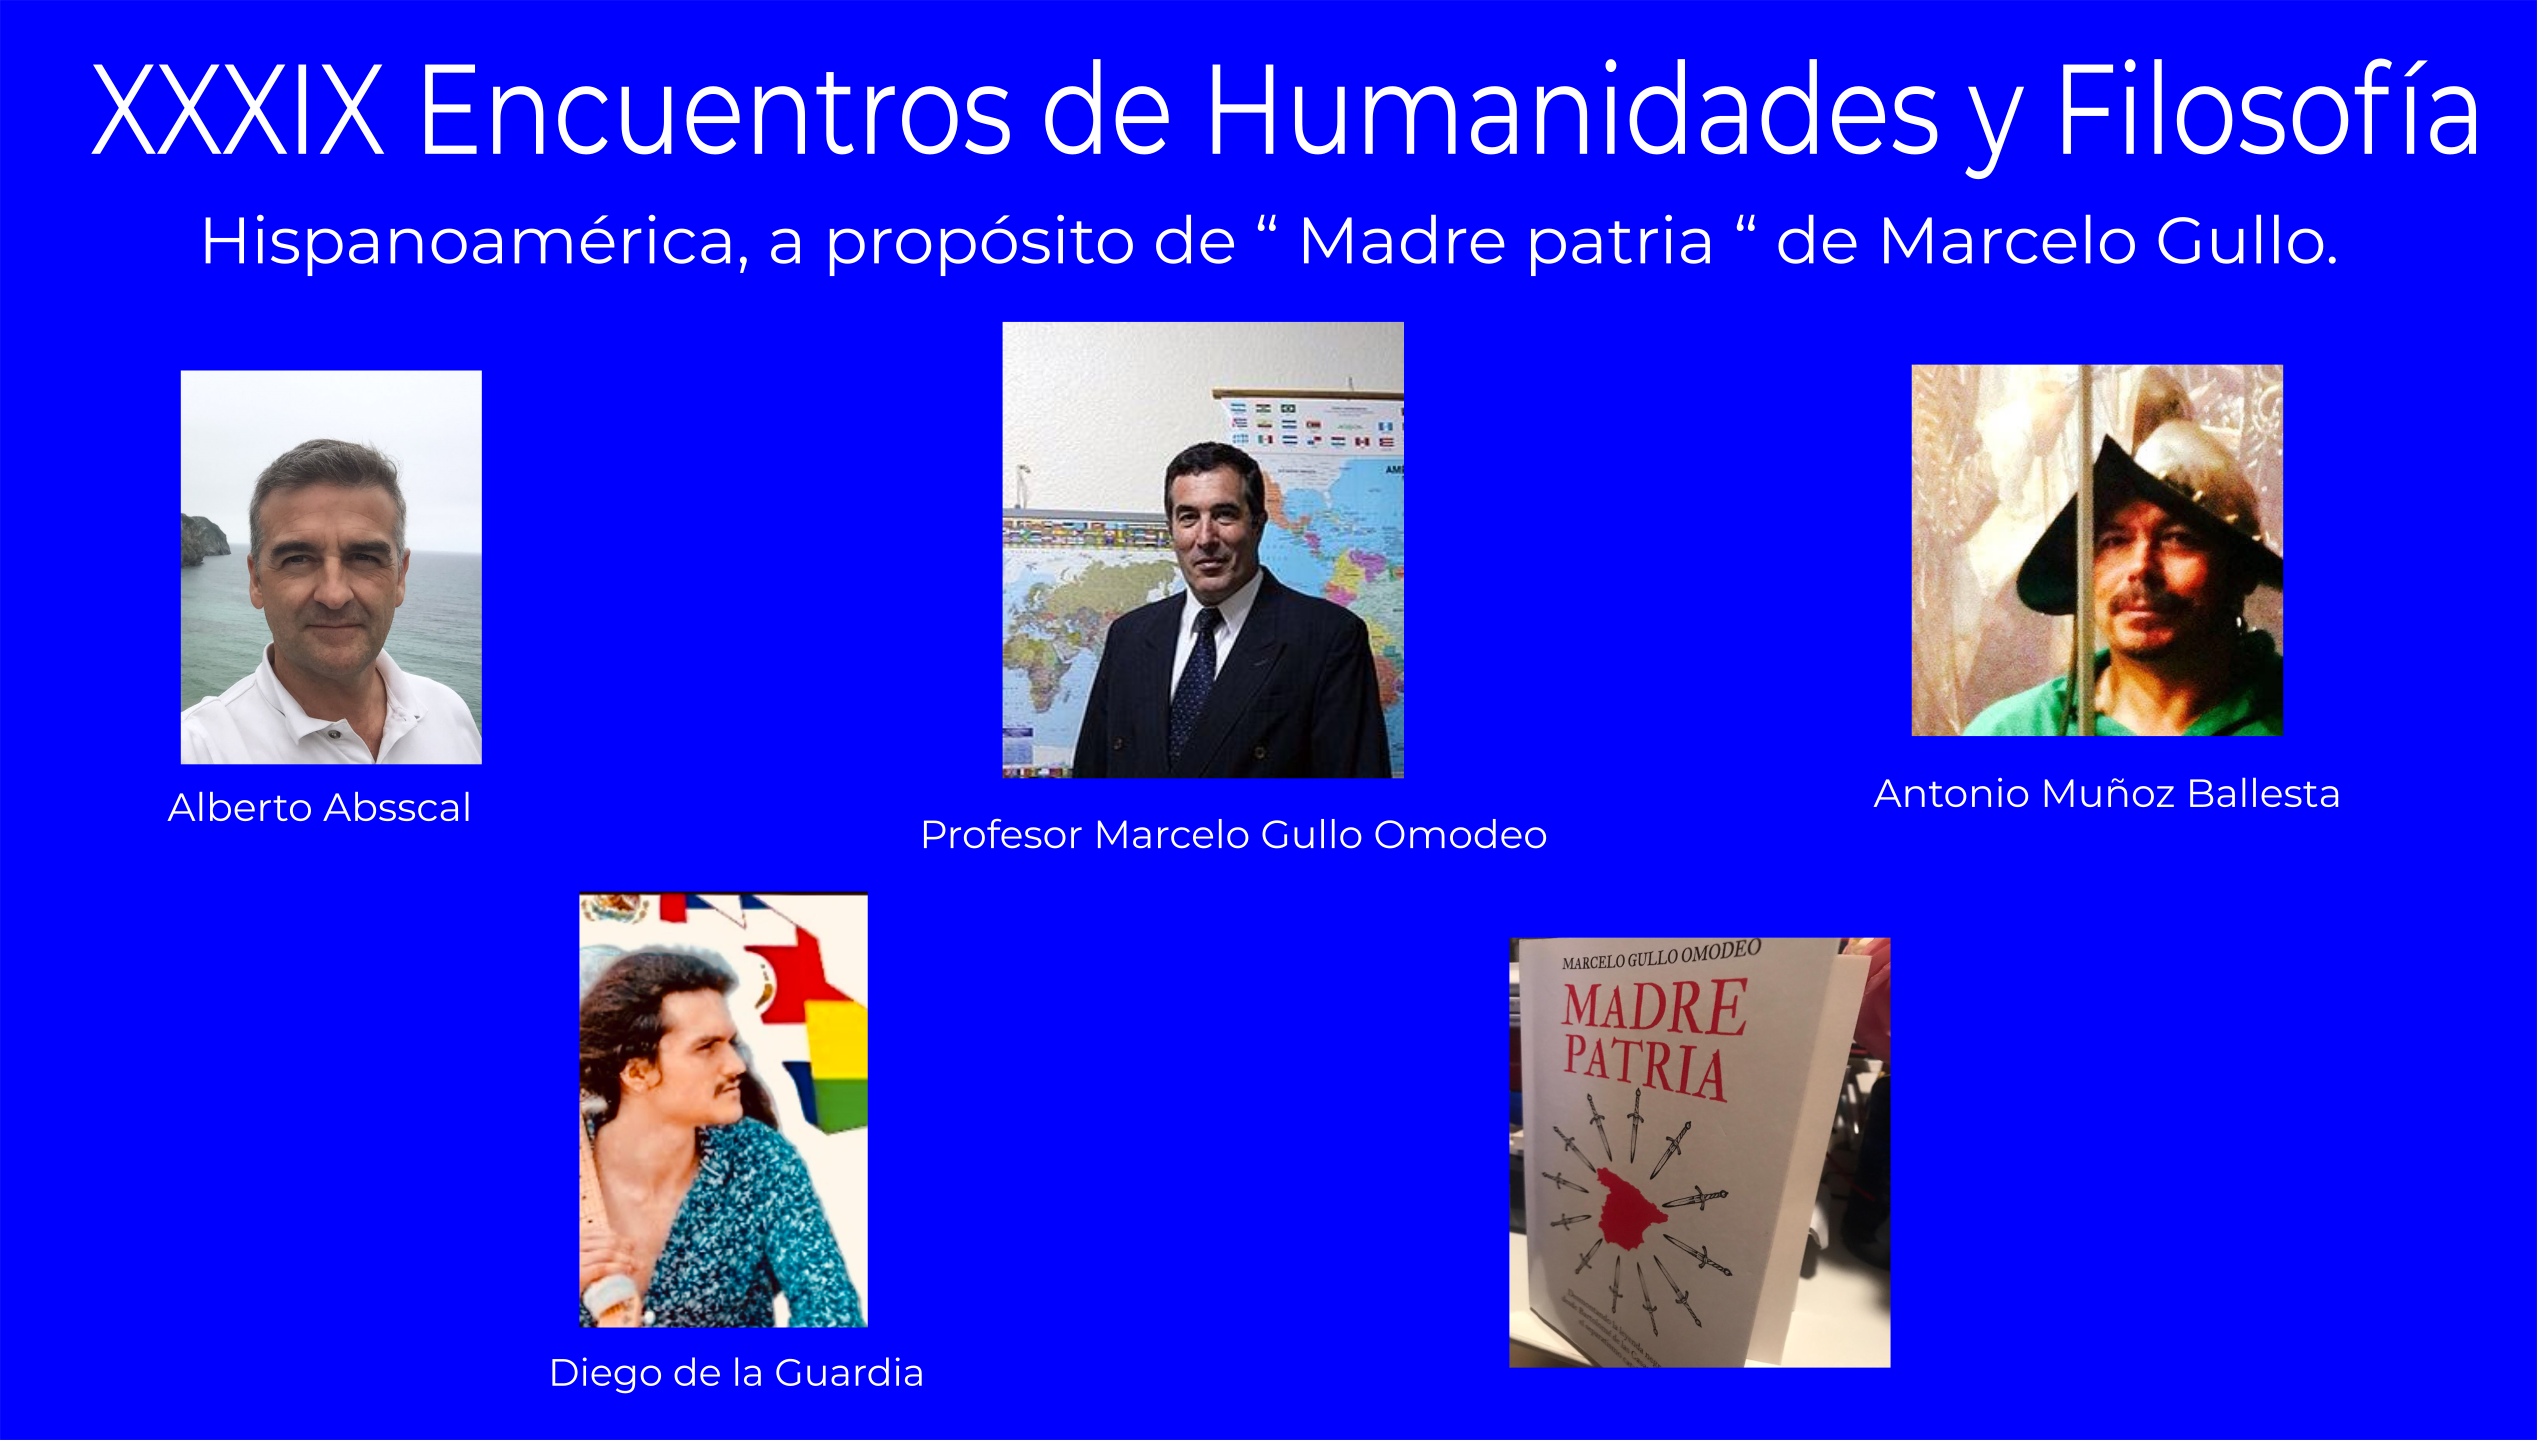 XXXIX Encuentros de Humanidades y Filosfofía,  Hispanoamérica, a propósito de “ Madre patria “ de Marcelo Gullo.